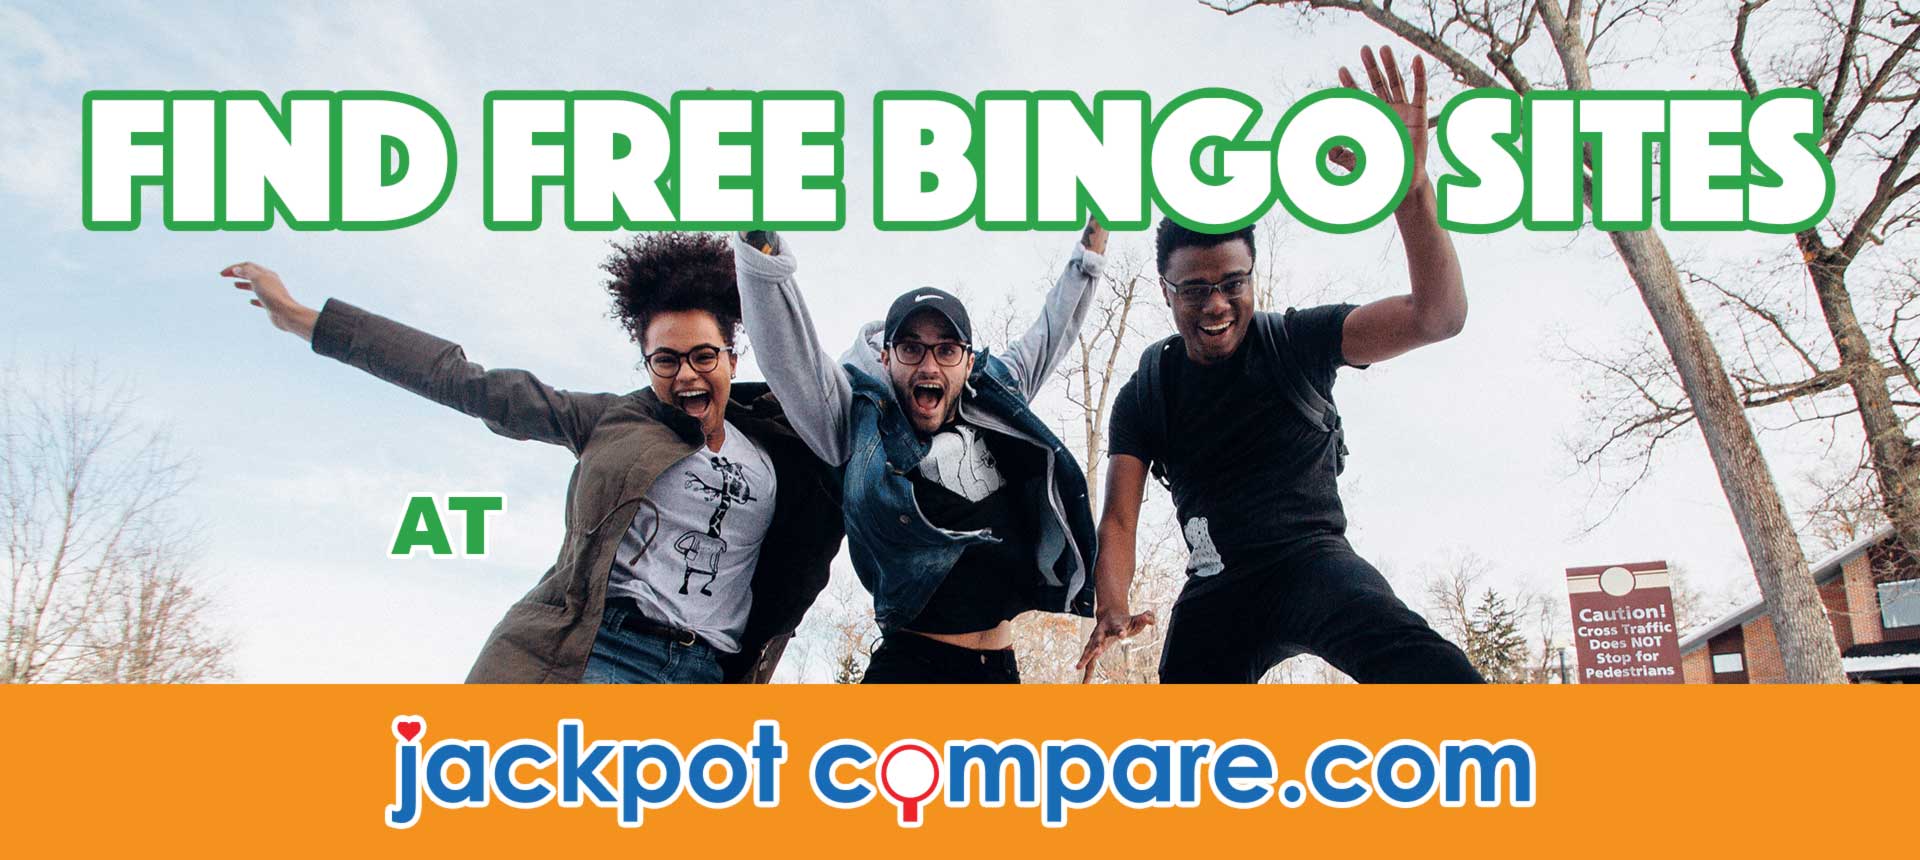 Free online bingo sites